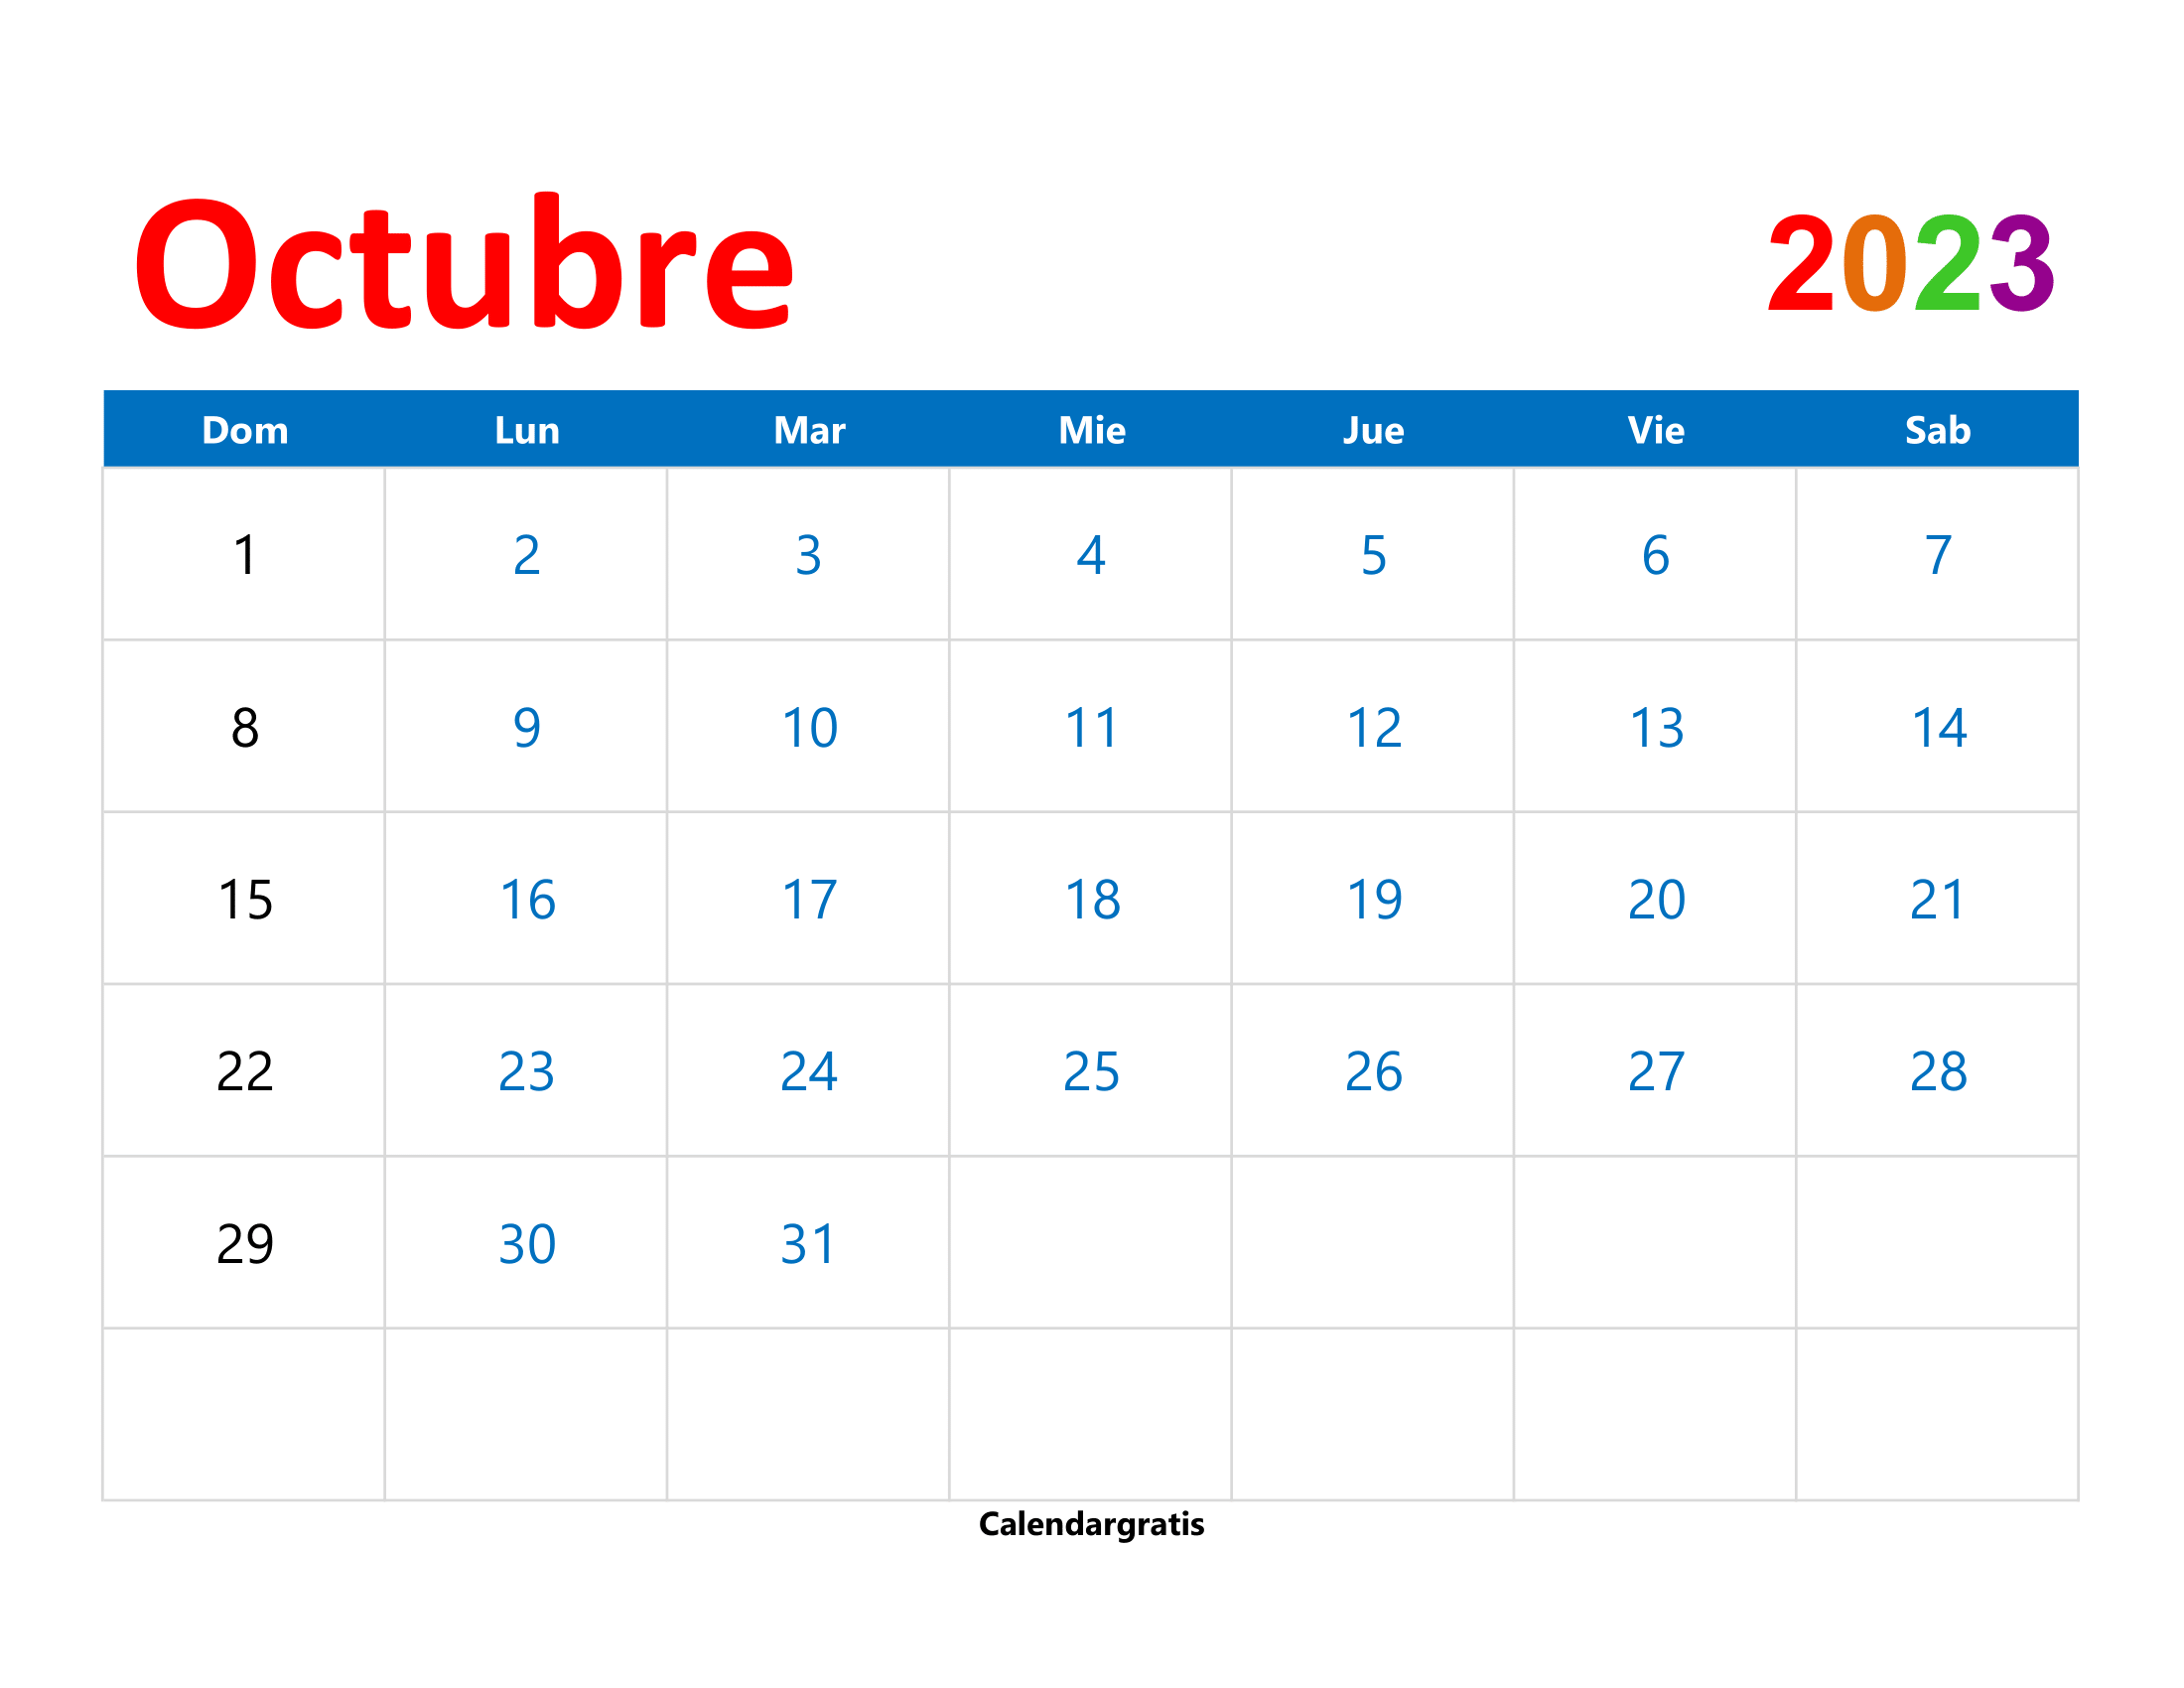 Descarga el calendario octubre 2023 para imprimir en formato para imprimir